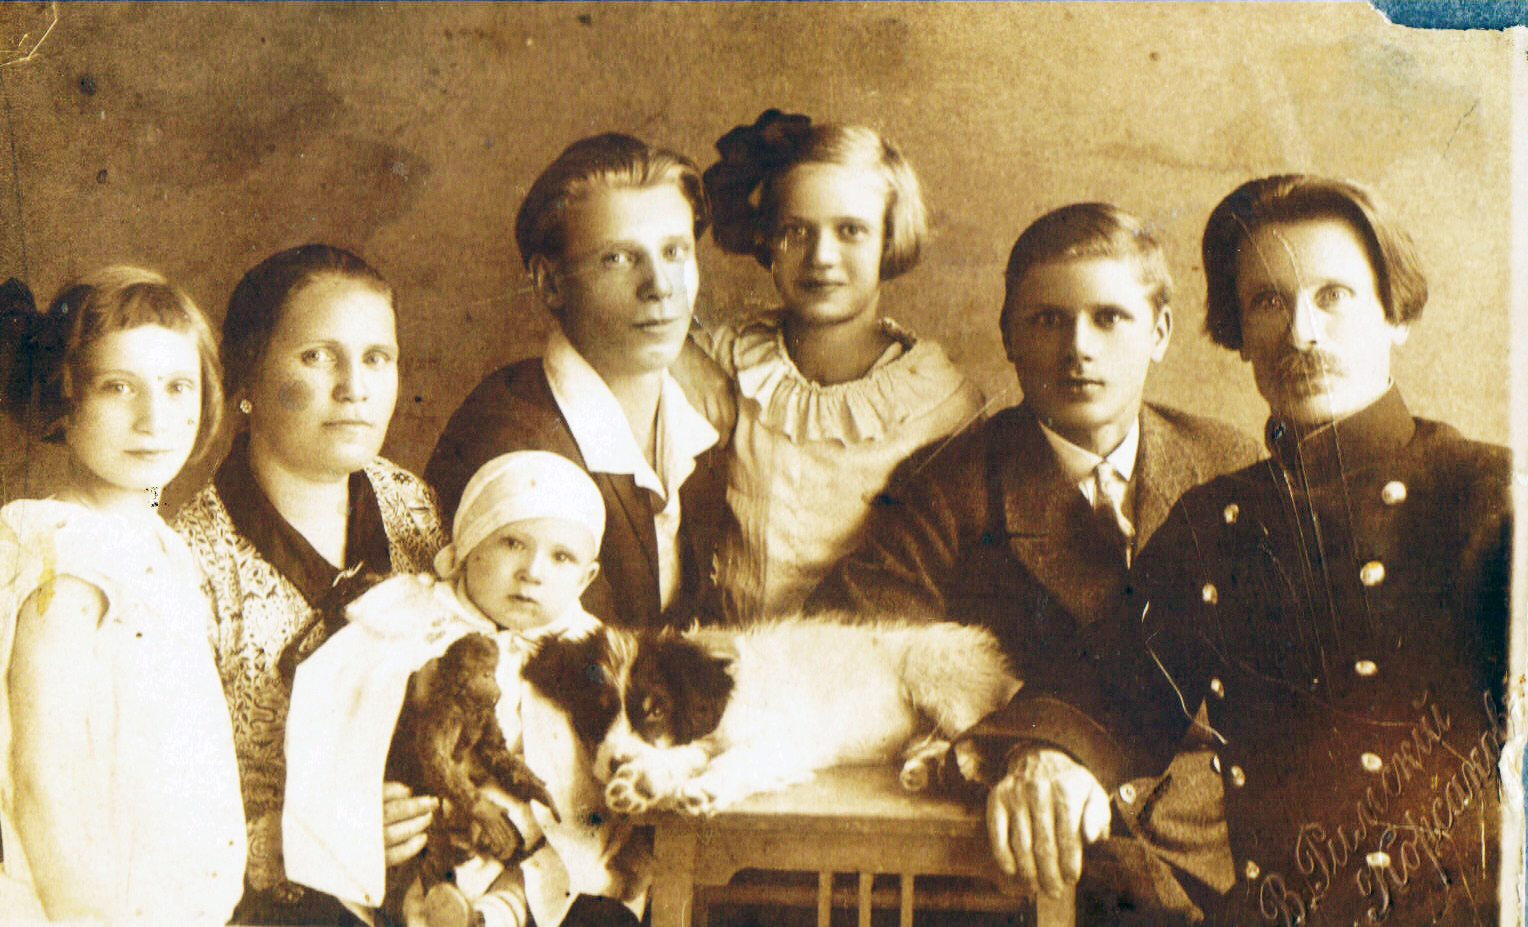 Богдановы Иона, Елена, дети Анатолий, Георгий, Раиса (моя мать), Зоя, Владимир 1930 г. 